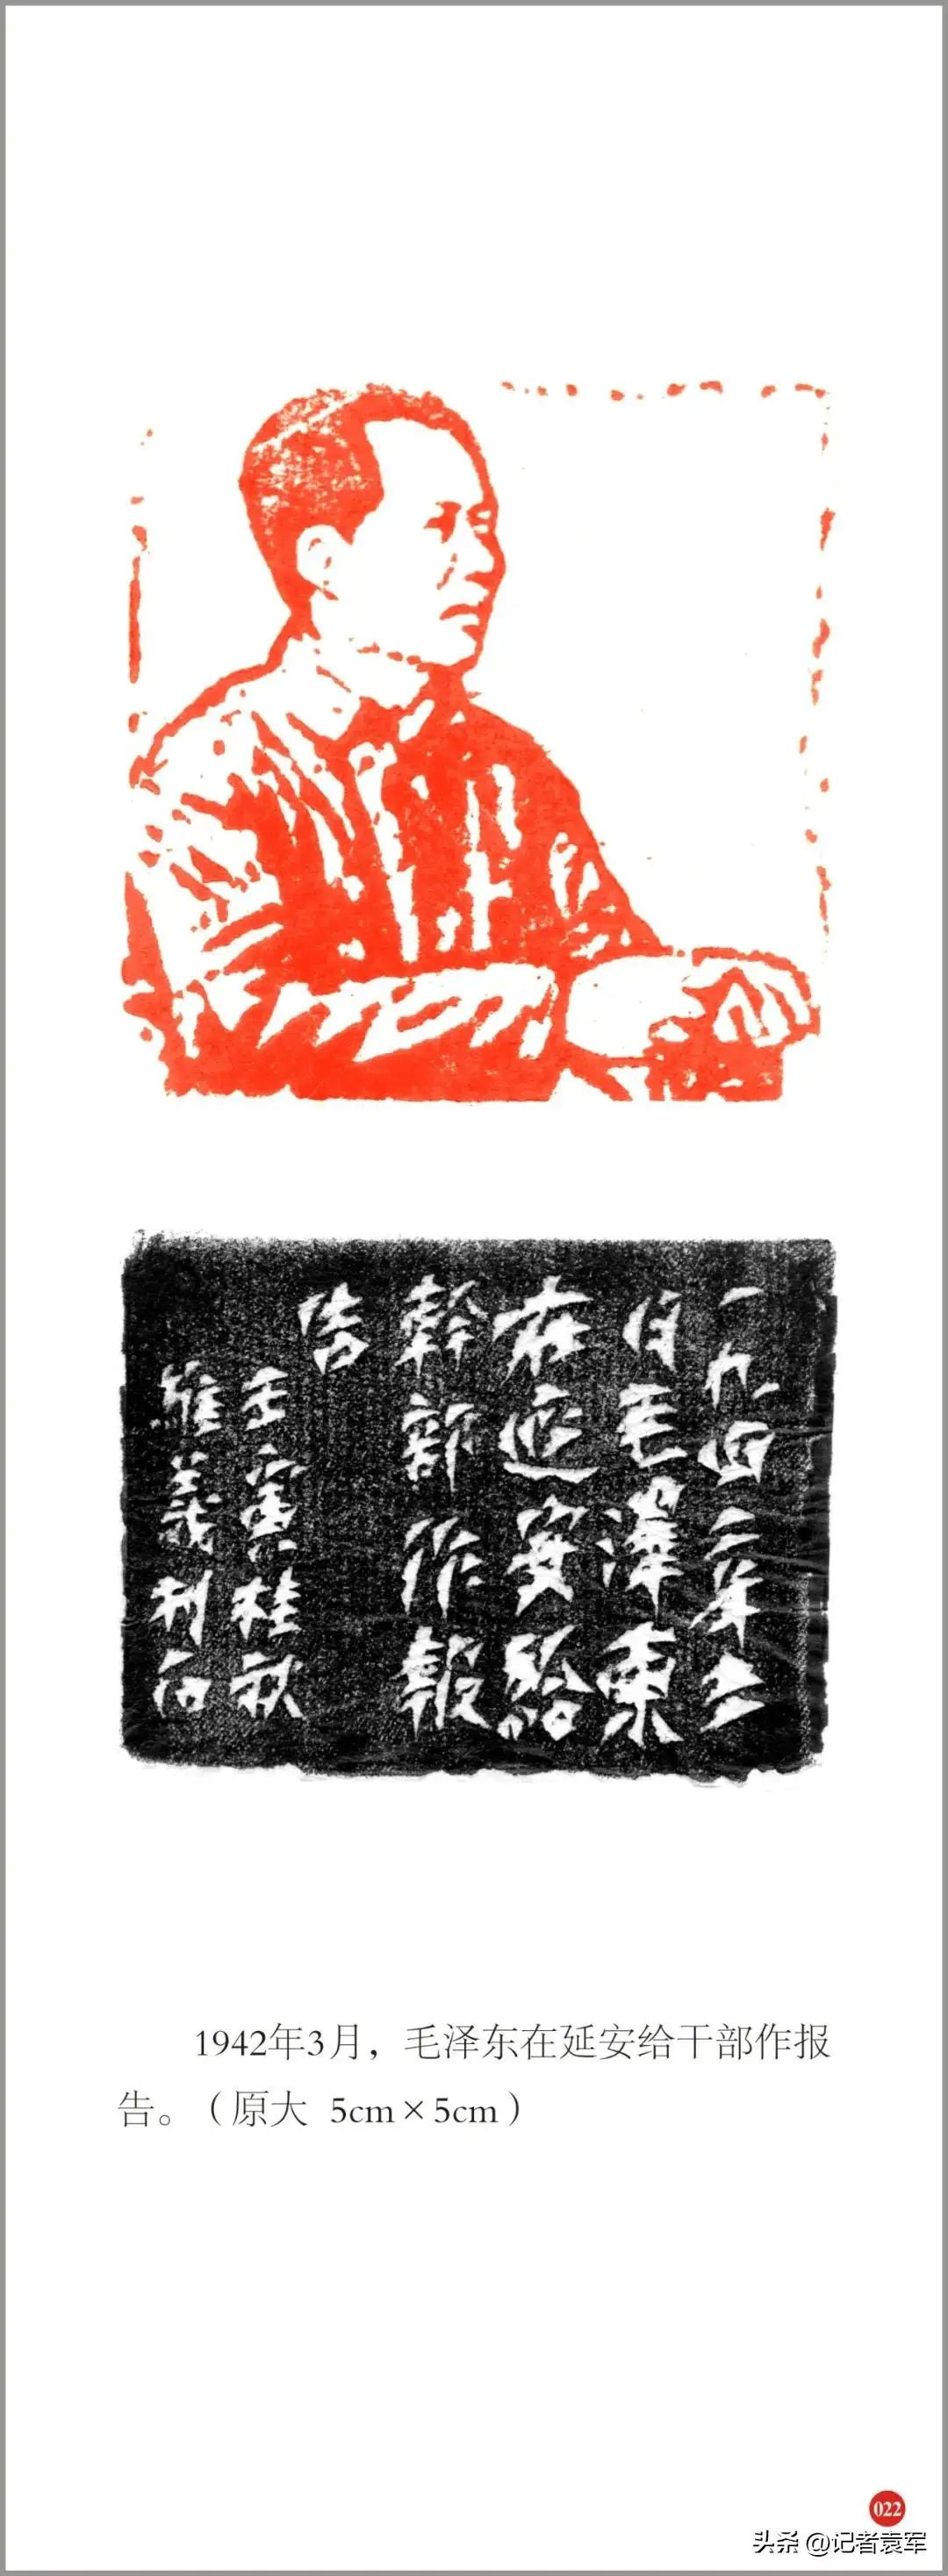 著名书法家、篆刻家文维义先生130件金石肖像印作品纪念毛泽东诞辰130周年